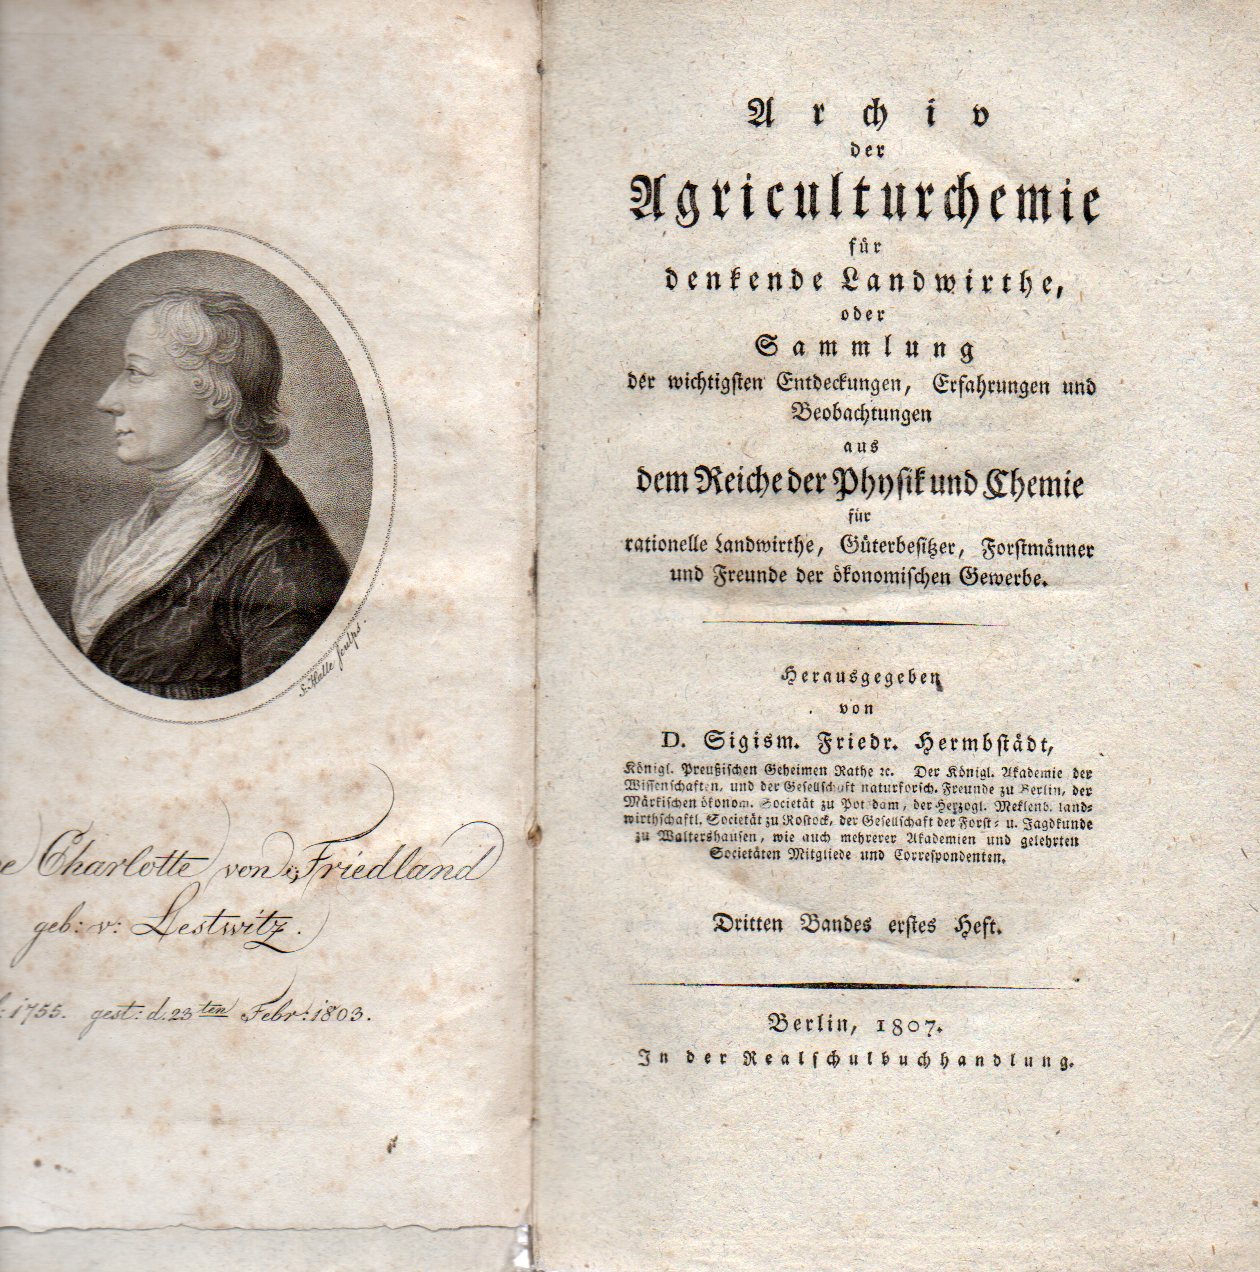 Hermbstädt,Sigismund Friedrich (Hsg.)  Archiv der Agriculturchemie für denkende Landwirthe, 